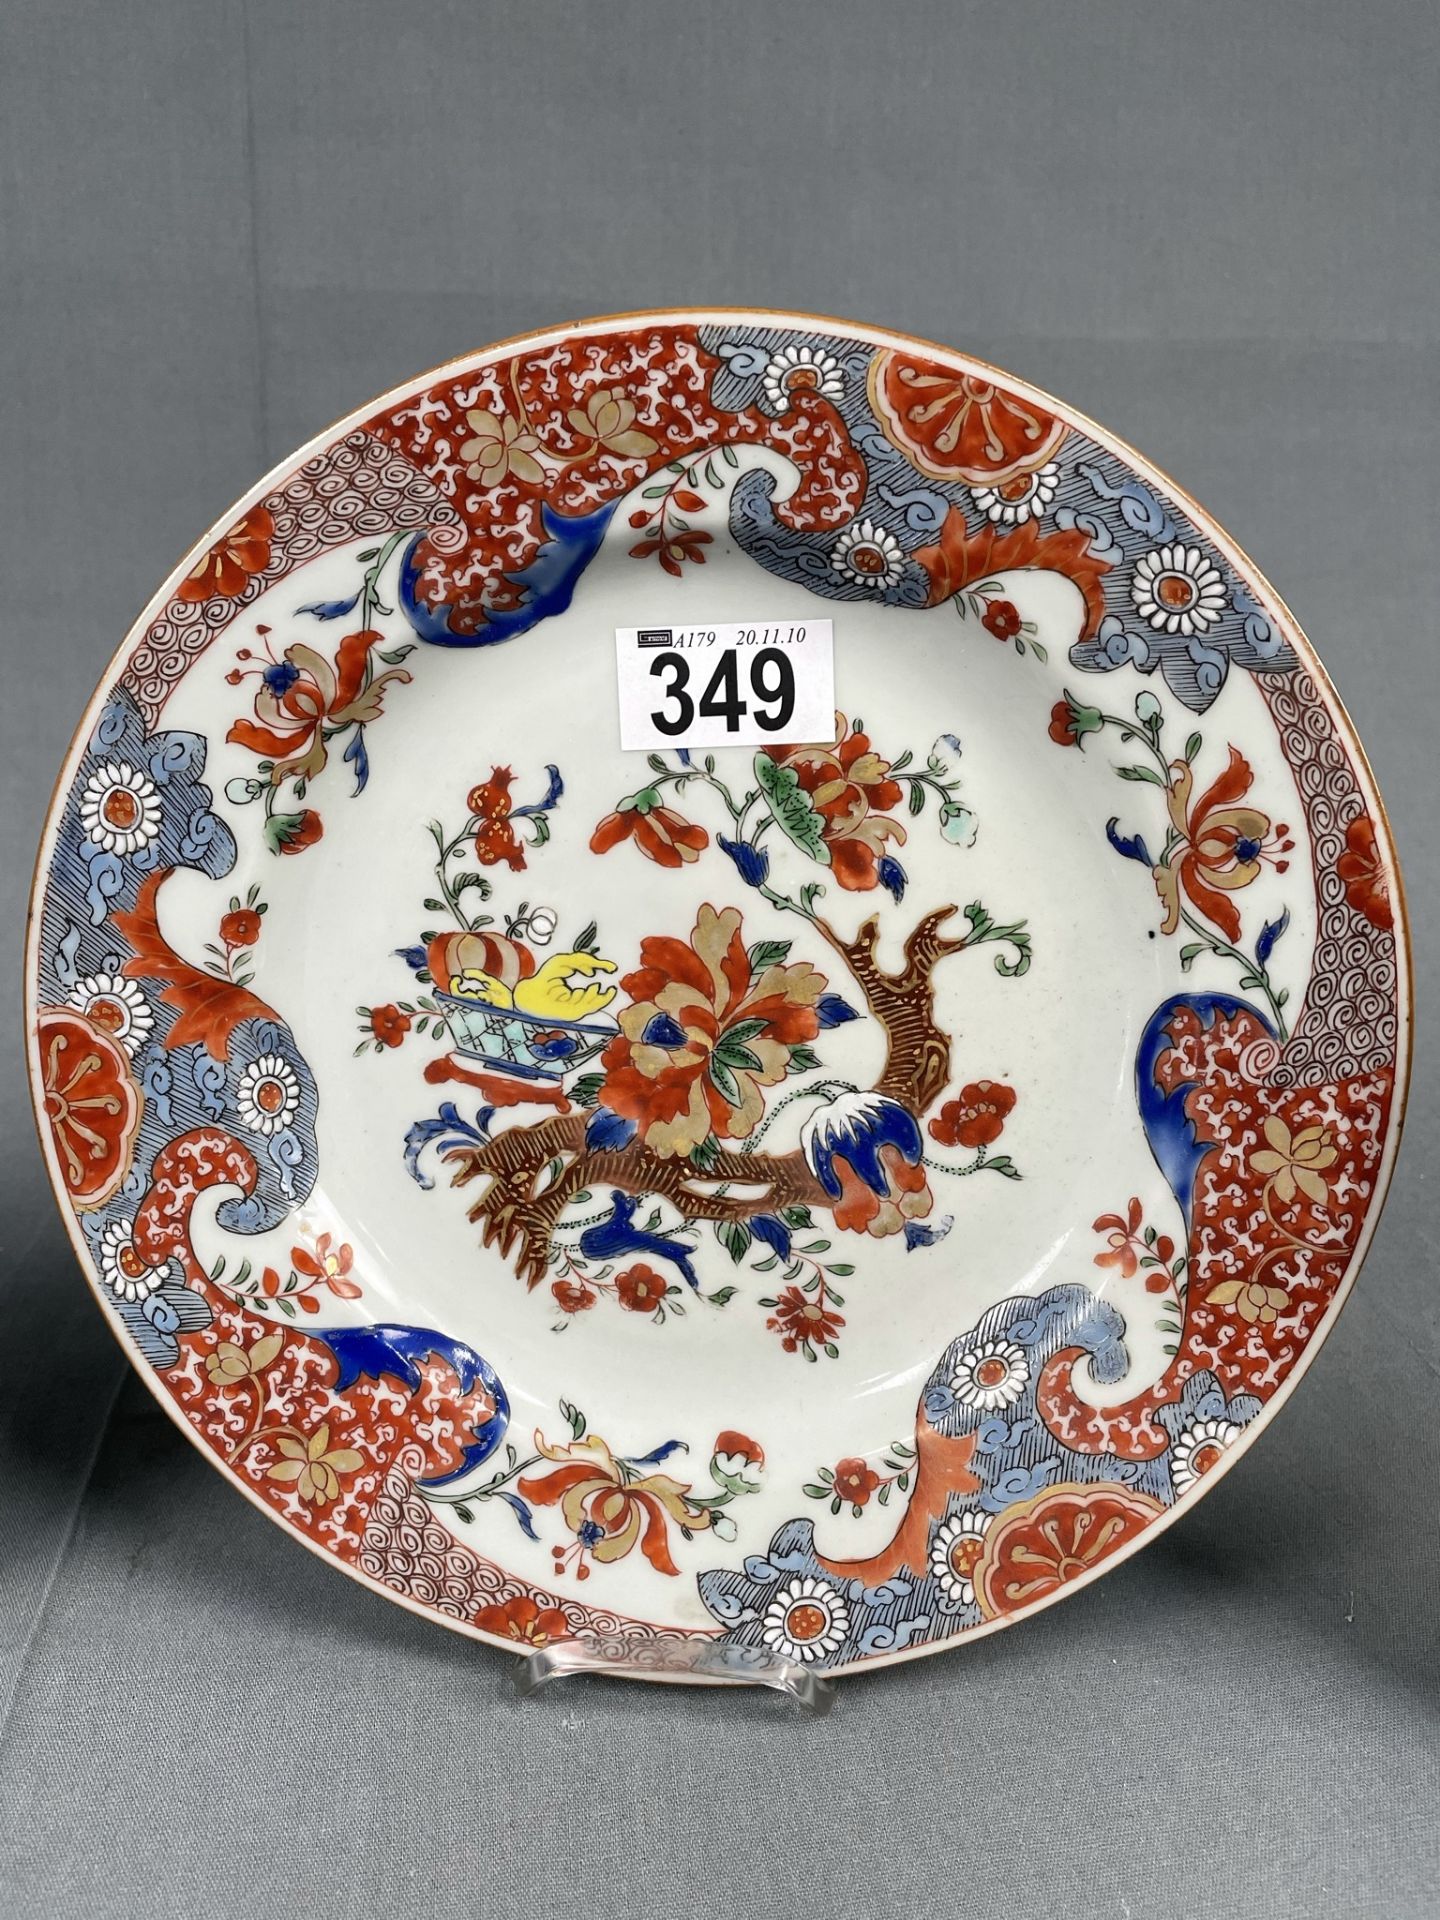 3 Teller und eine Schale. Wohl China antik 18. / 19. Jahrhundert? - Bild 4 aus 10